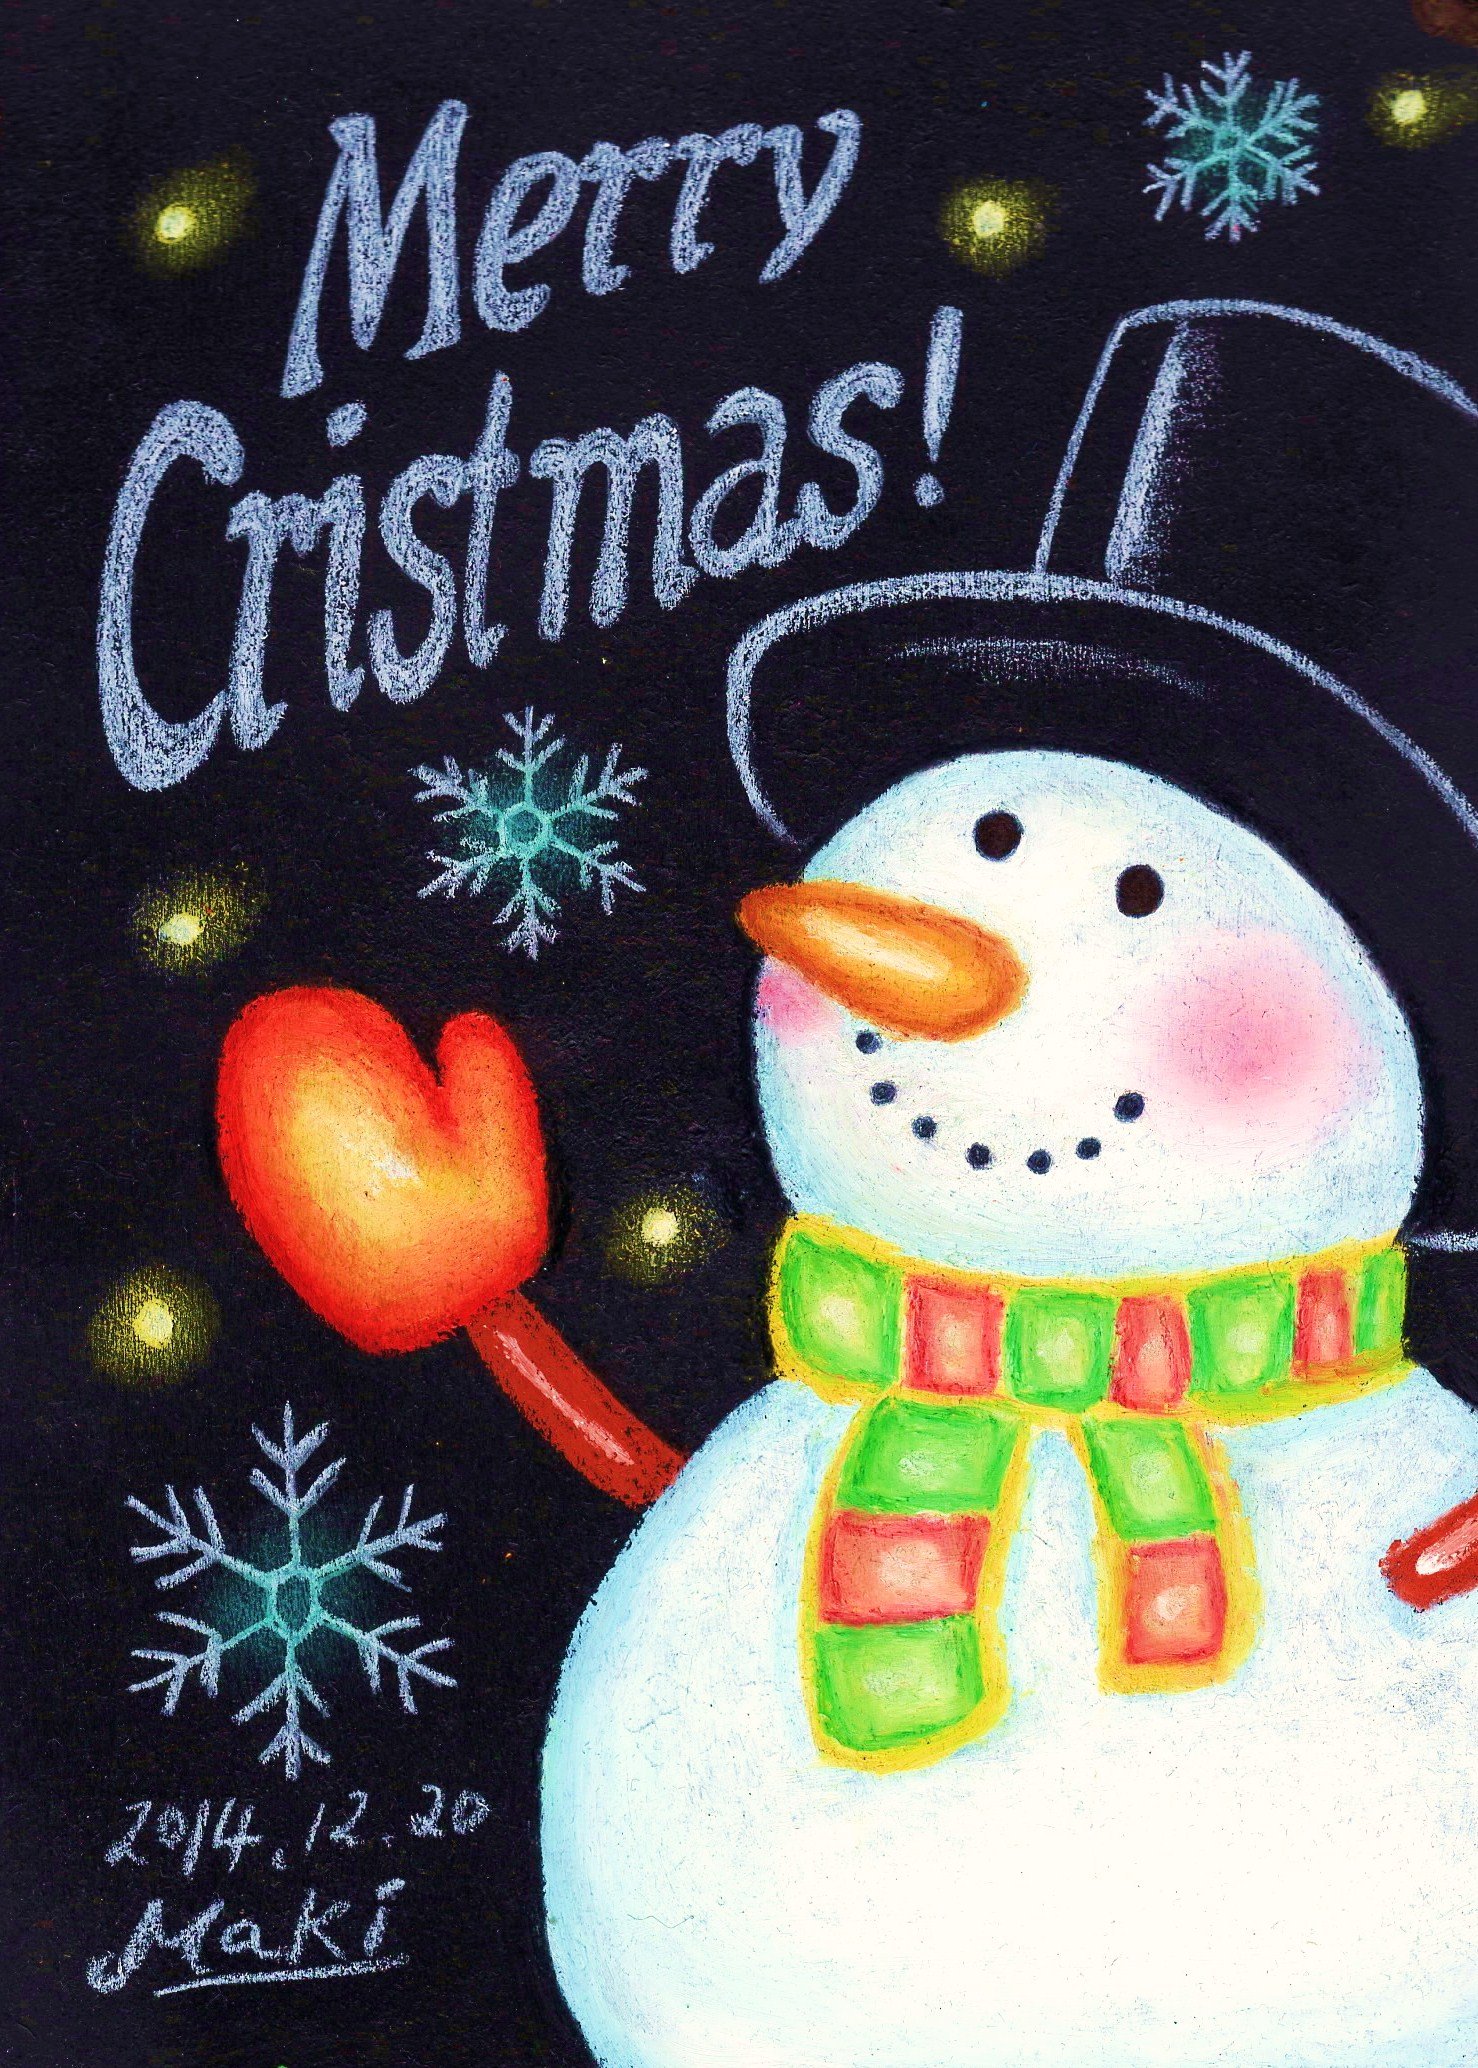 ﾁｮｰｸｱｰﾄｽﾀｼﾞｵマキアート メリークリスマス クリスマス チョークアート 黒板アート ツリー マキアート チョークアートスタジオマキアート 札幌 明日はすごいホワイトクリスマスになるかも 大雪 T Co Gev2jbxlbz Twitter